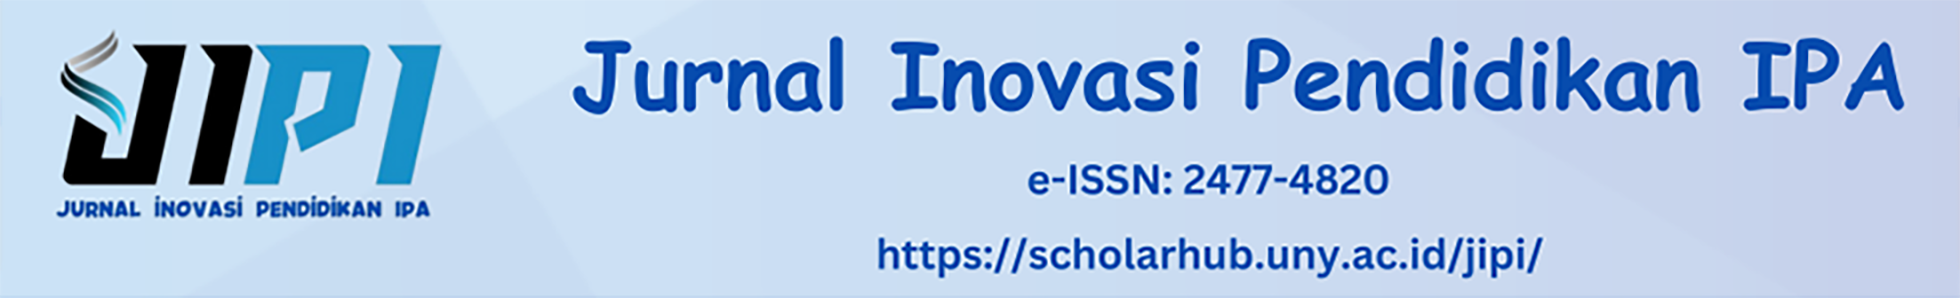 Jurnal Inovasi Pendidikan IPA